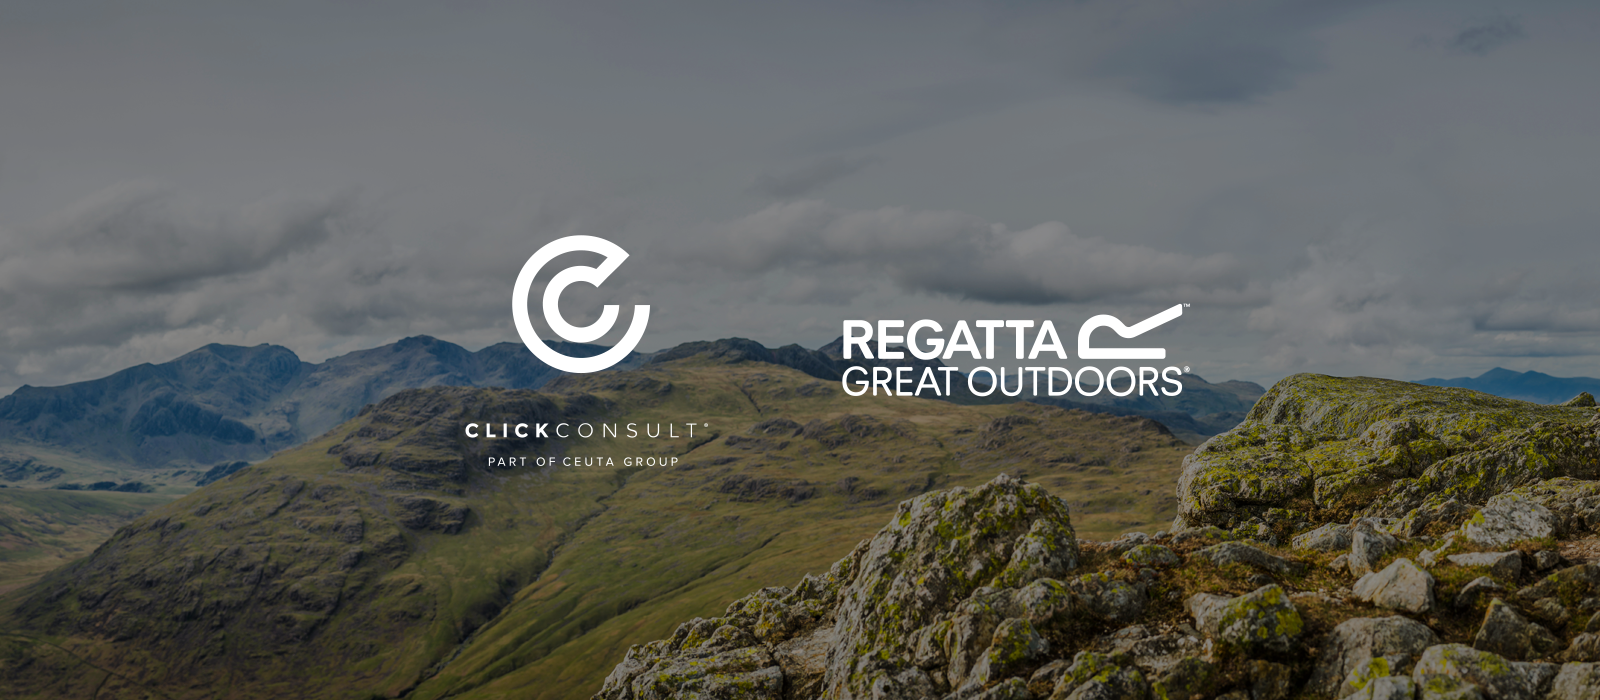 Click Consult and Regatta Client Win PR